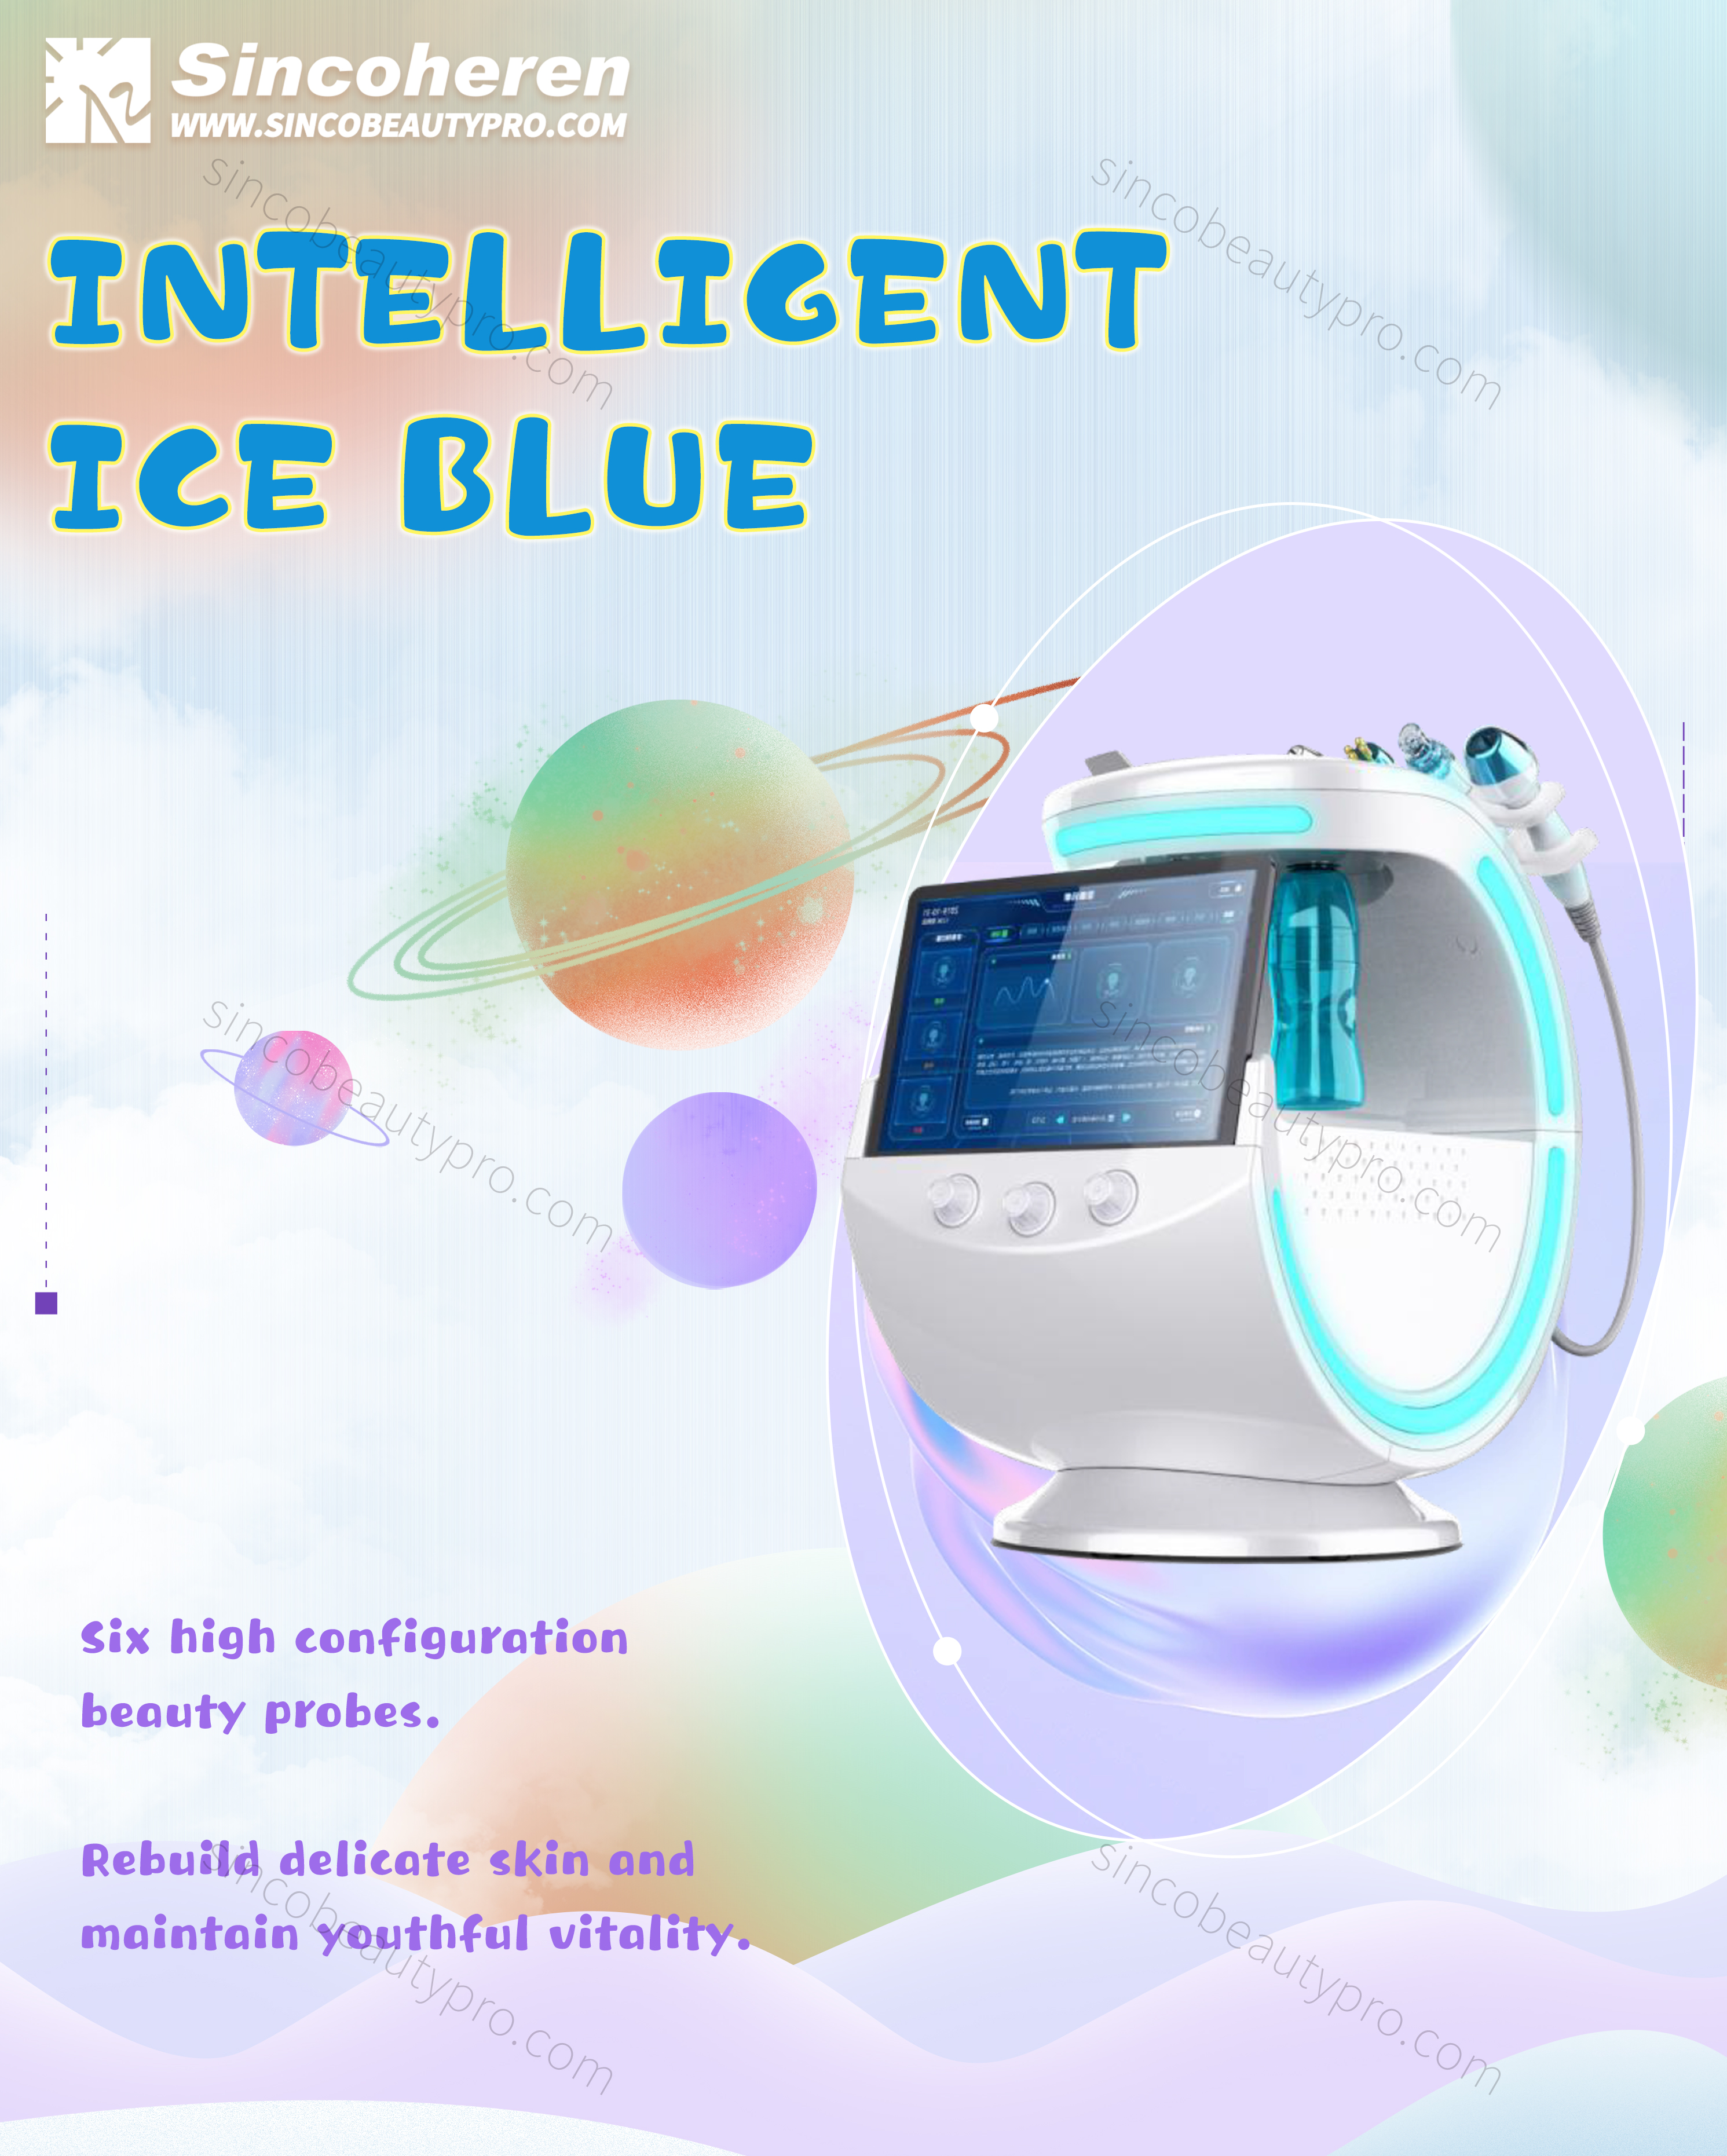 Prenosni 7v1 Inteligentni sistem za upravljanje ledeno modre kože Pro Release